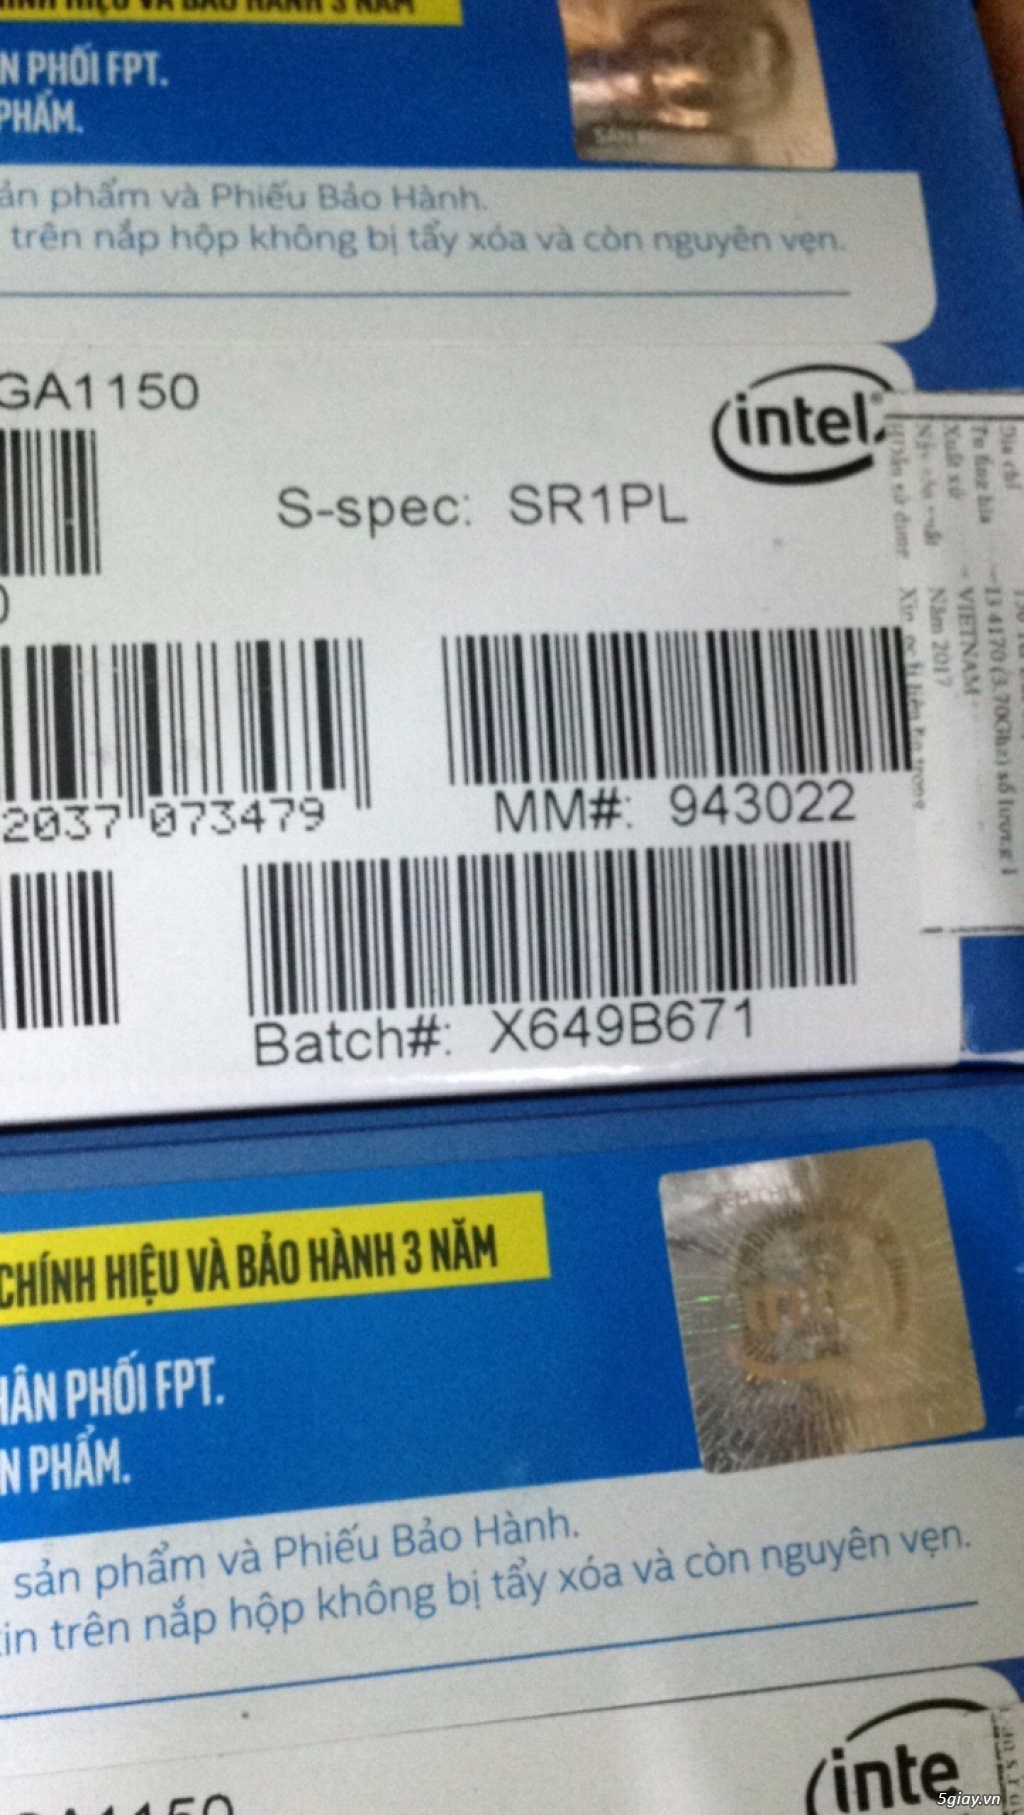 Chip intel i3 4170 1150 (new) + main h110mds2 (new)full bảohành giá rẻ - 2